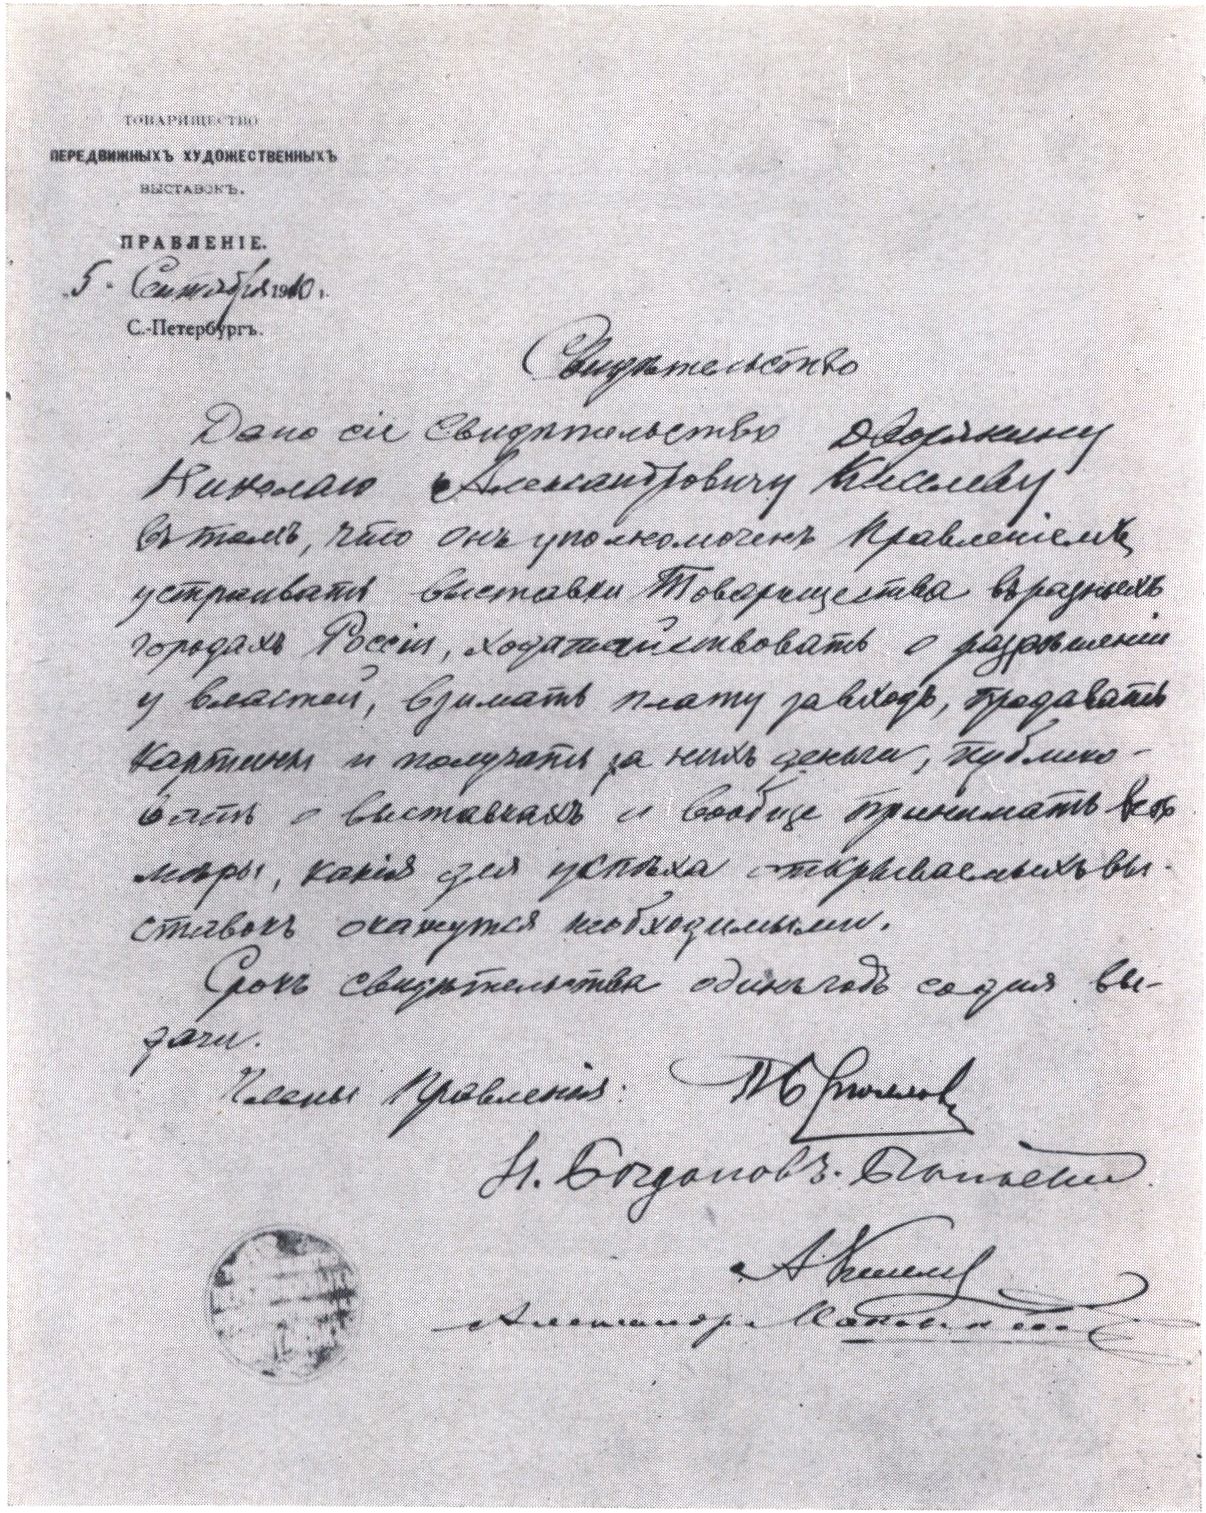 Письмо правления ТПХВ Н.А. Киселеву о назначении его уполномоченным ТПХВ. 1910